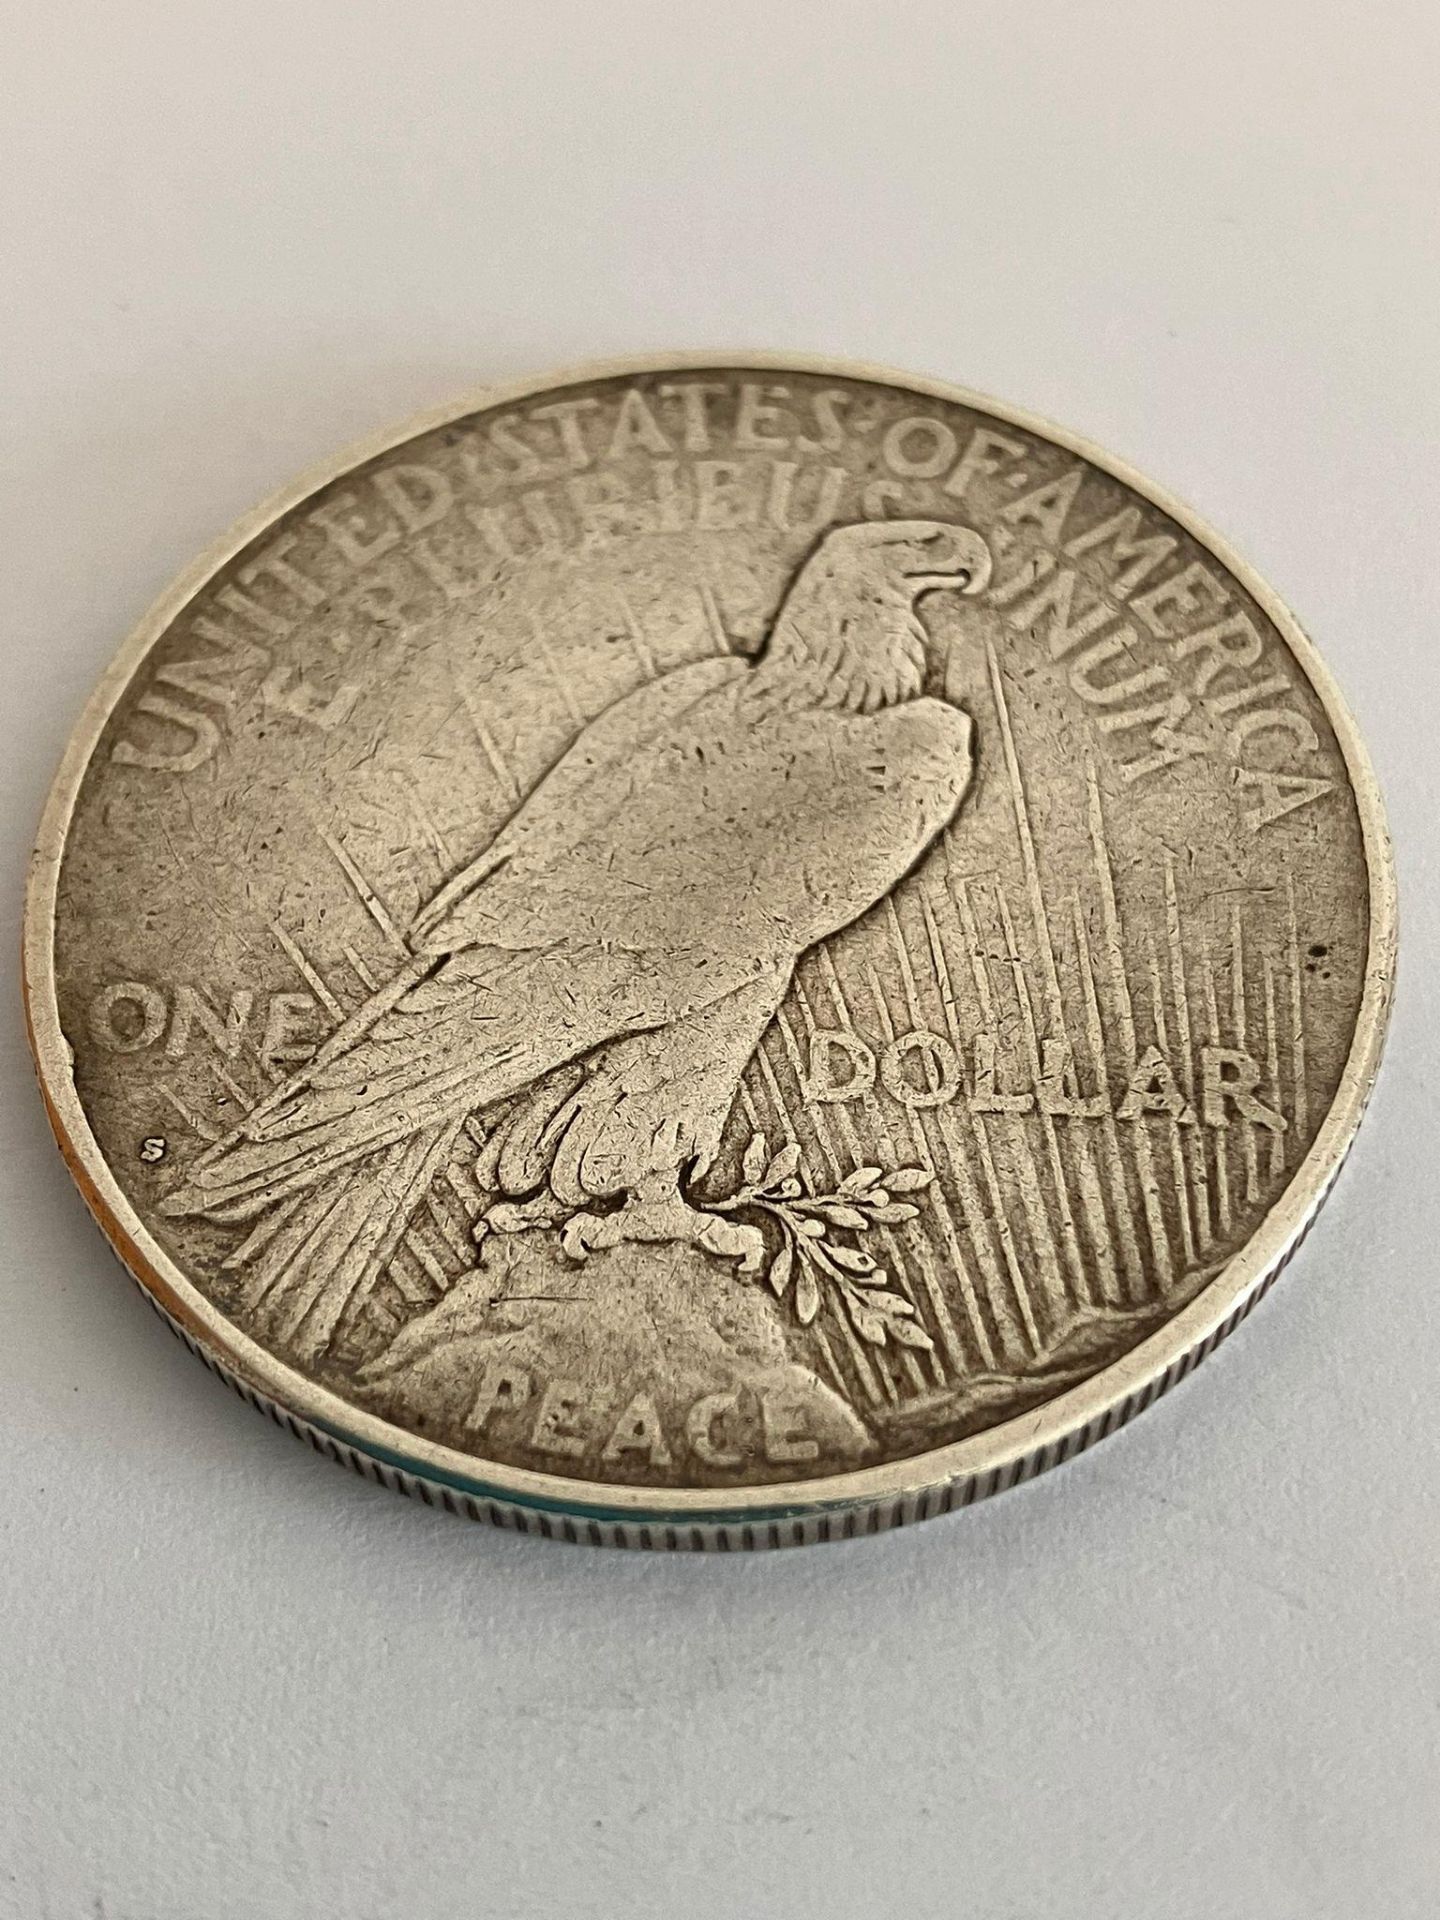 1923 USA SILVER PEACE DOLLAR. Fine/very fine condition.